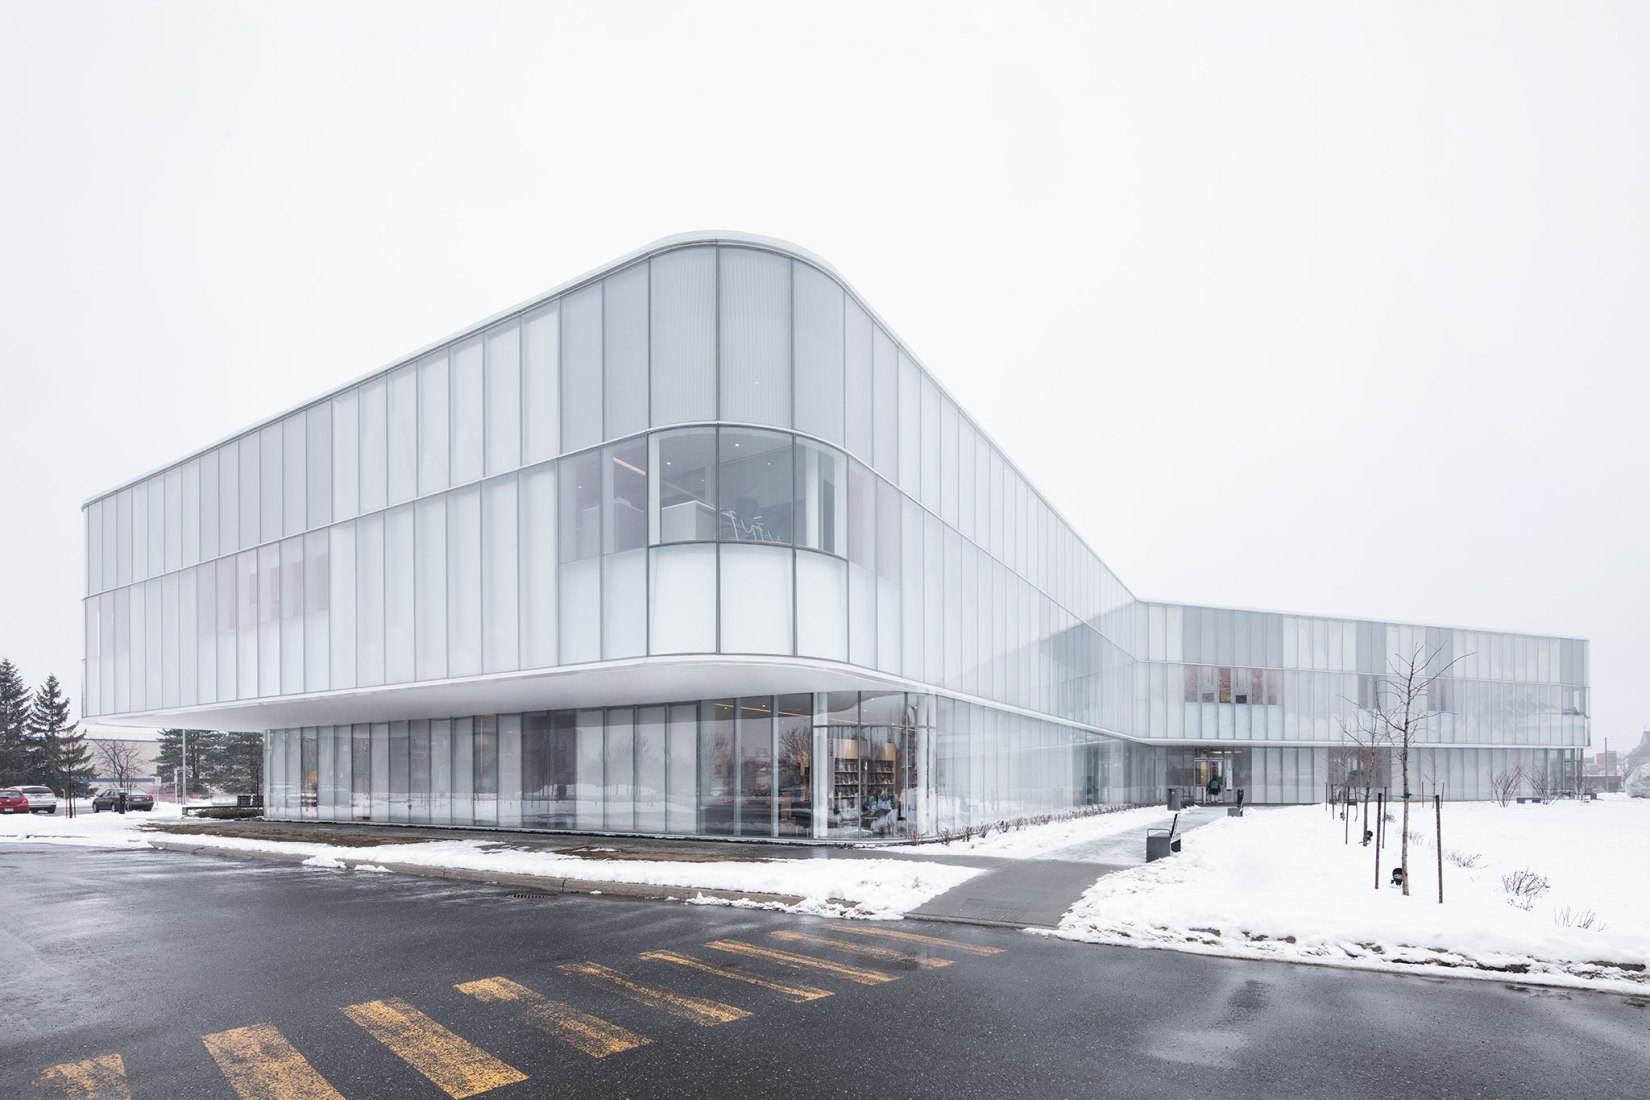 Biblioteca pública de Drummondville por Chevalier Morales Architectes, DMA architectes. Fotografía por Adrien Williams